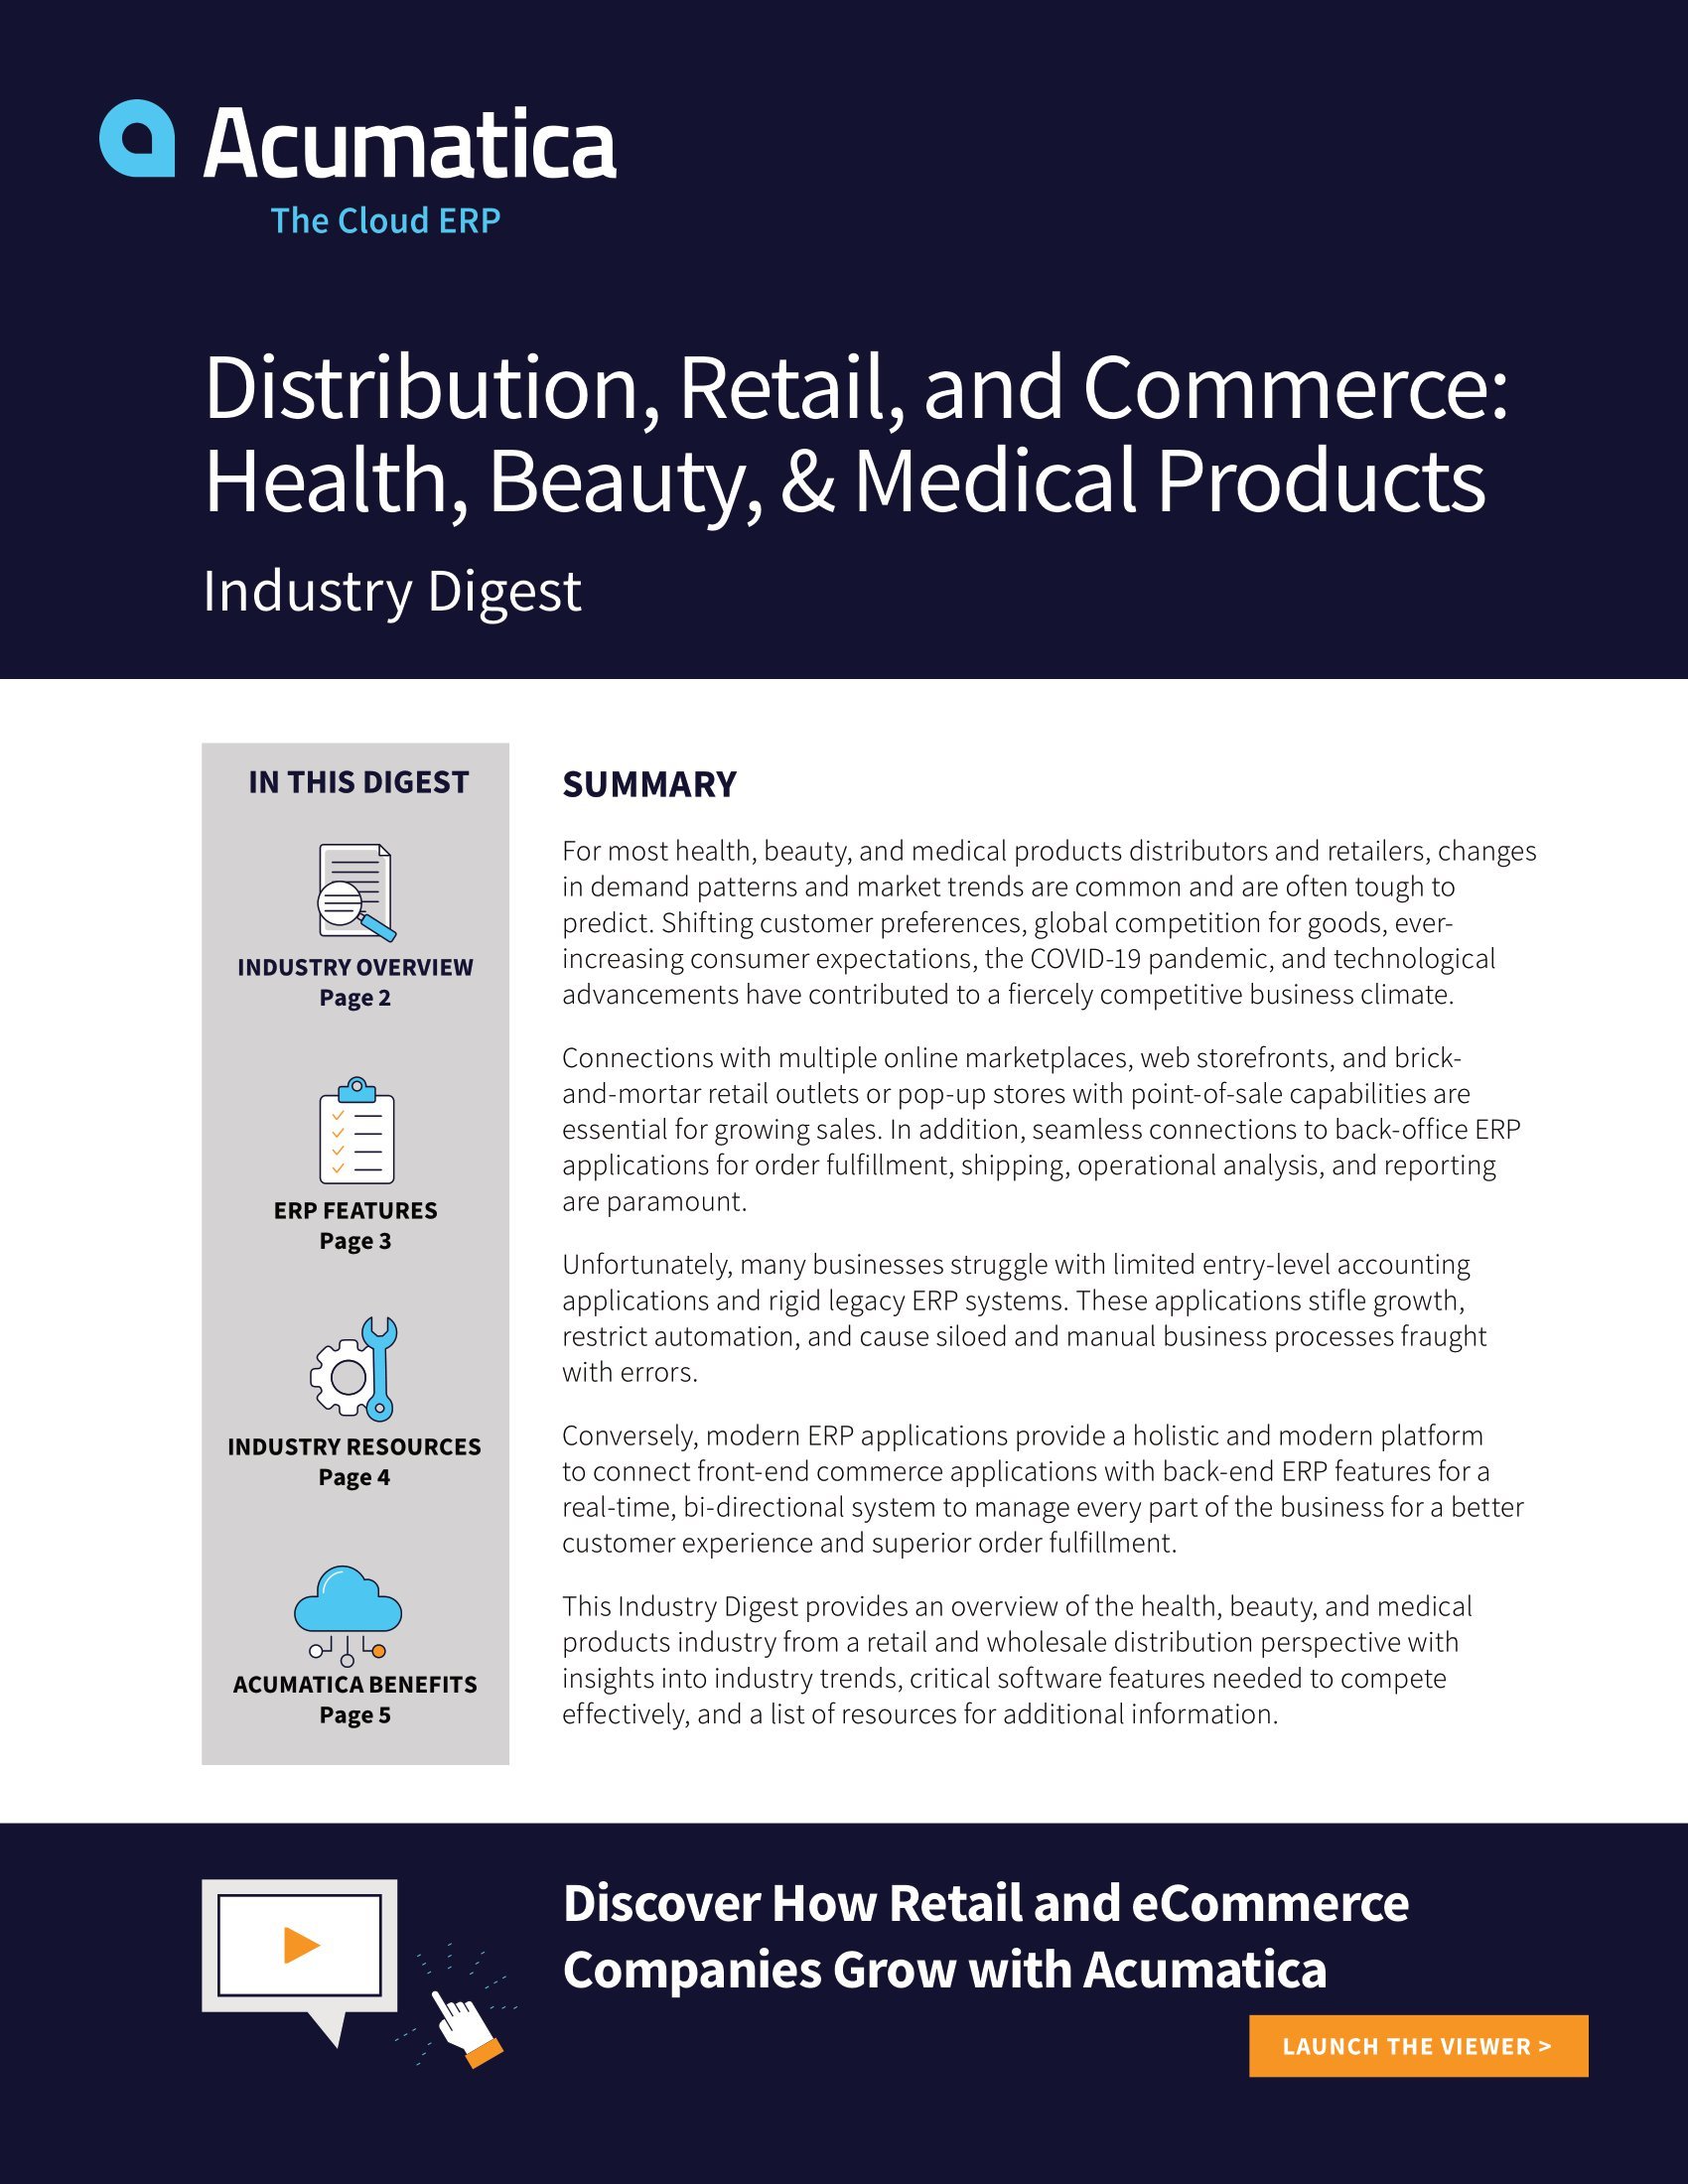 Distributeurs et détaillants de produits de santé, de beauté et médicaux : Attirer et fidéliser les clients grâce à une application ERP moderne